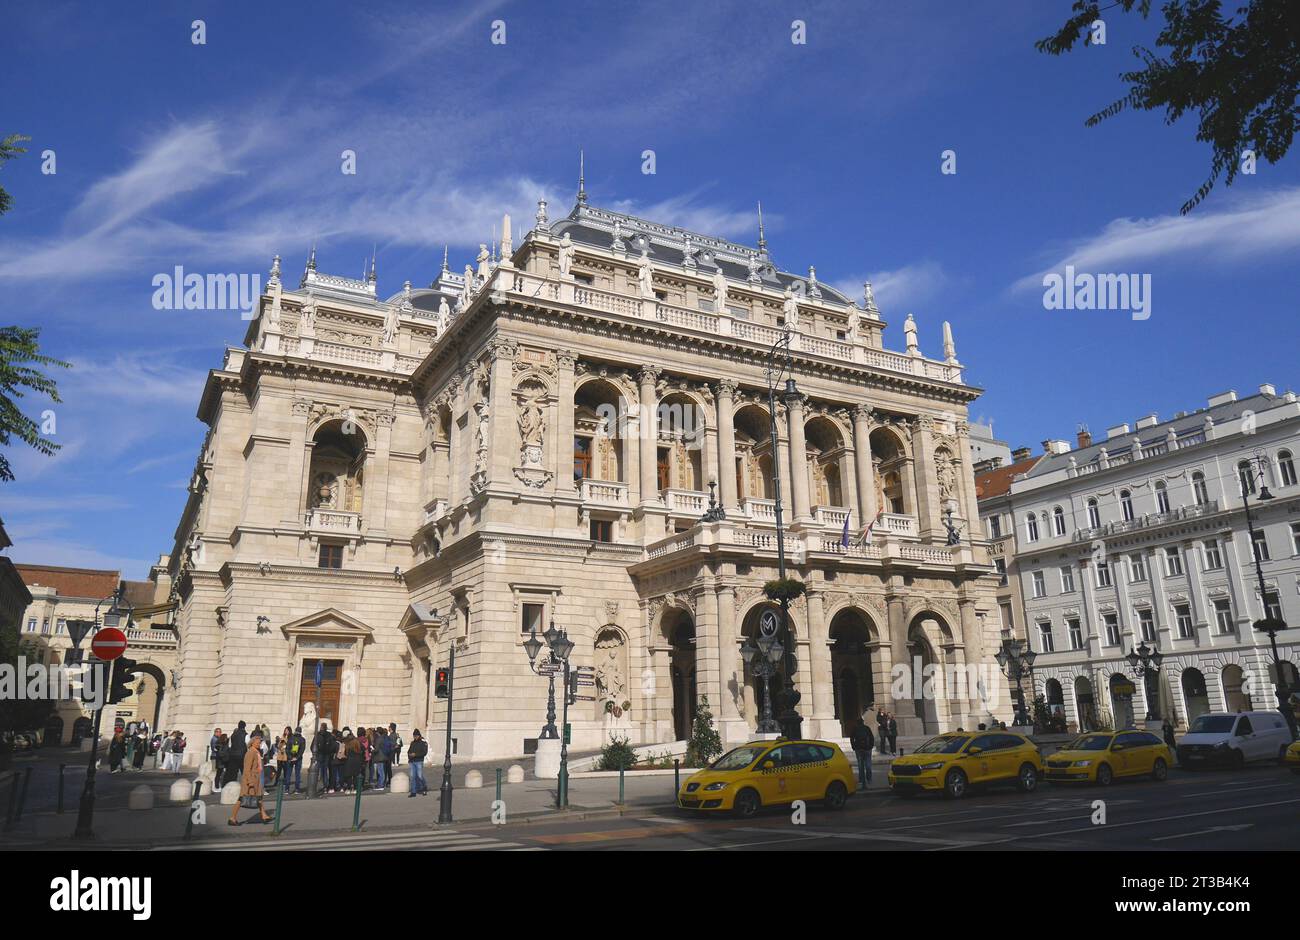 Die Ungarische Staatsoper, Andrassy ut, Andrassy Avenue, Budapest, Ungarn Stockfoto